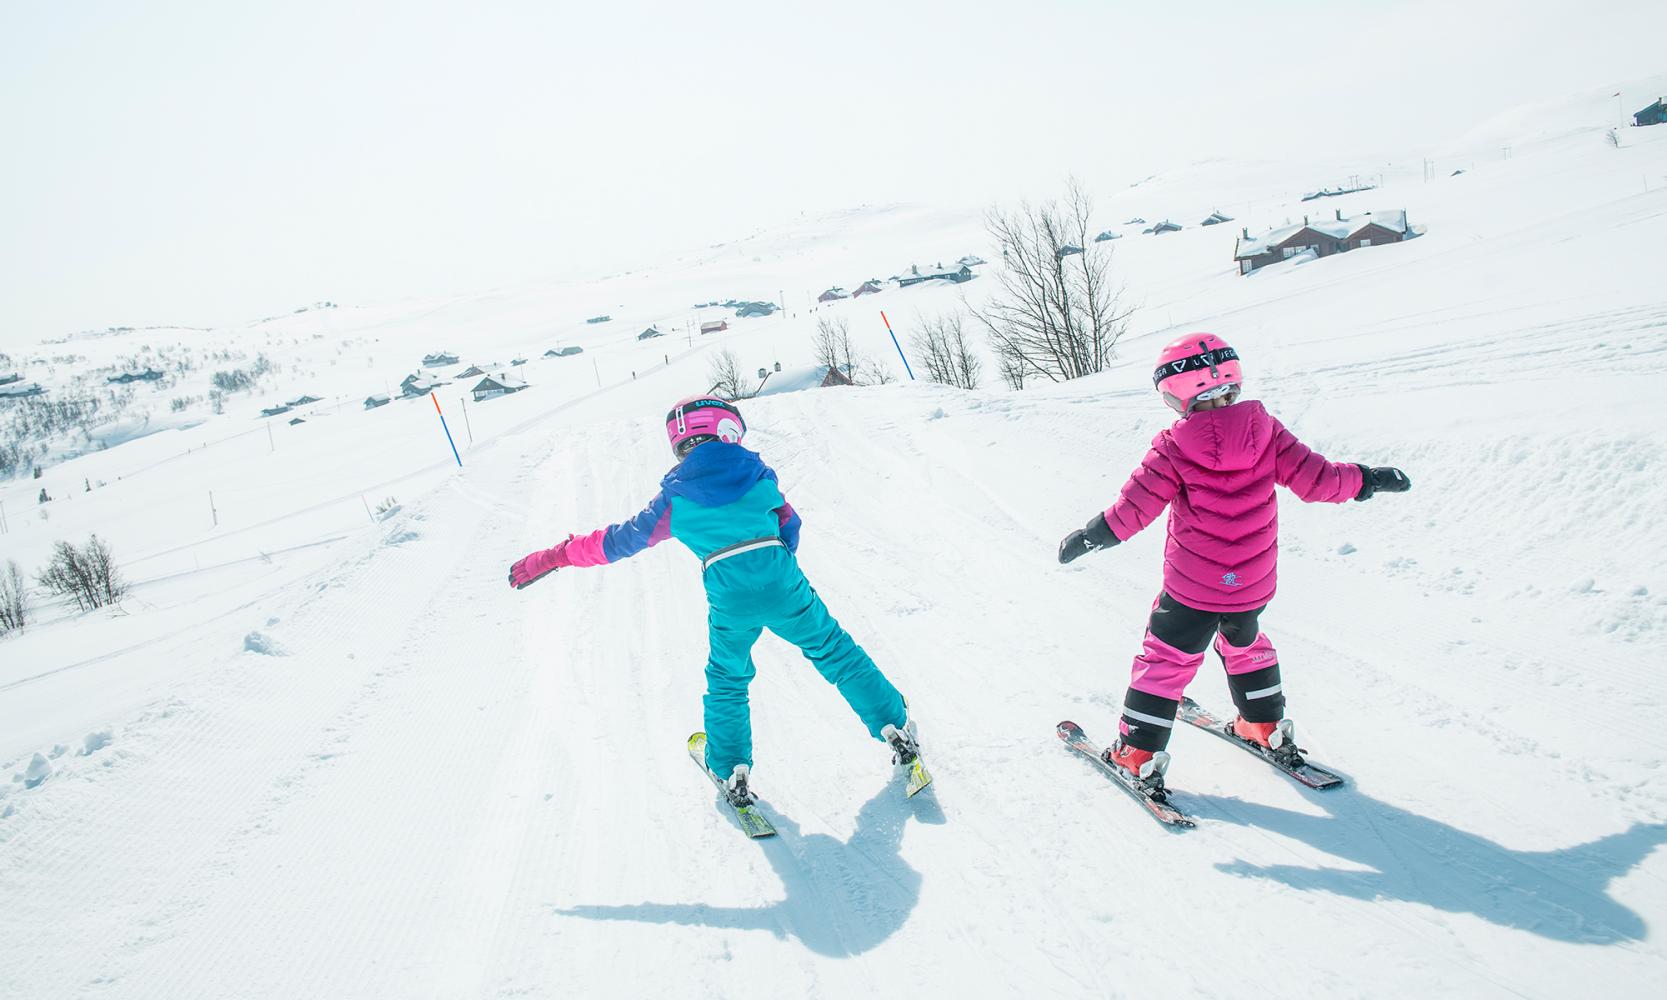 Kids on skis